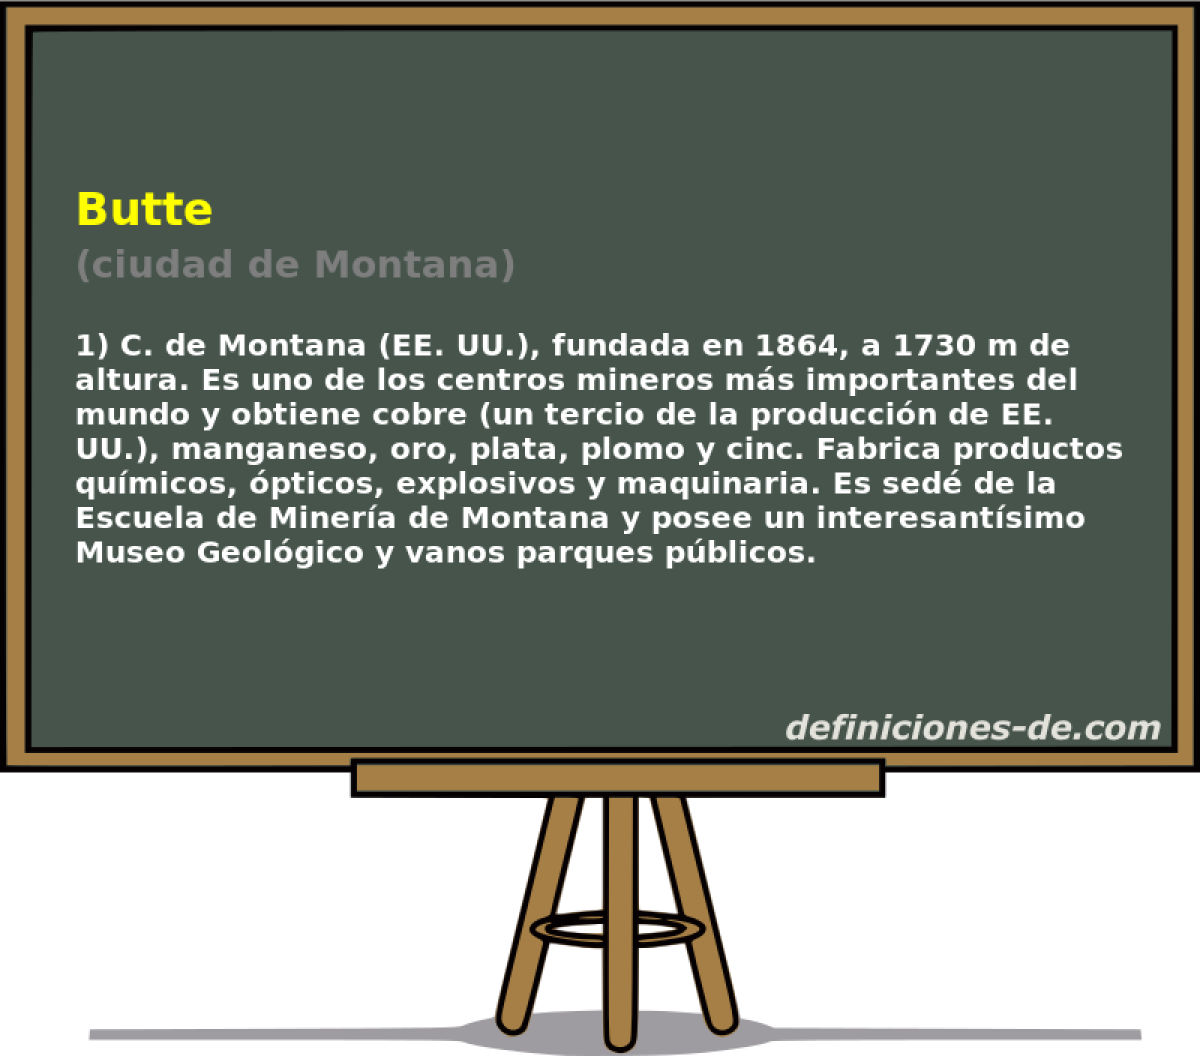 Butte (ciudad de Montana)